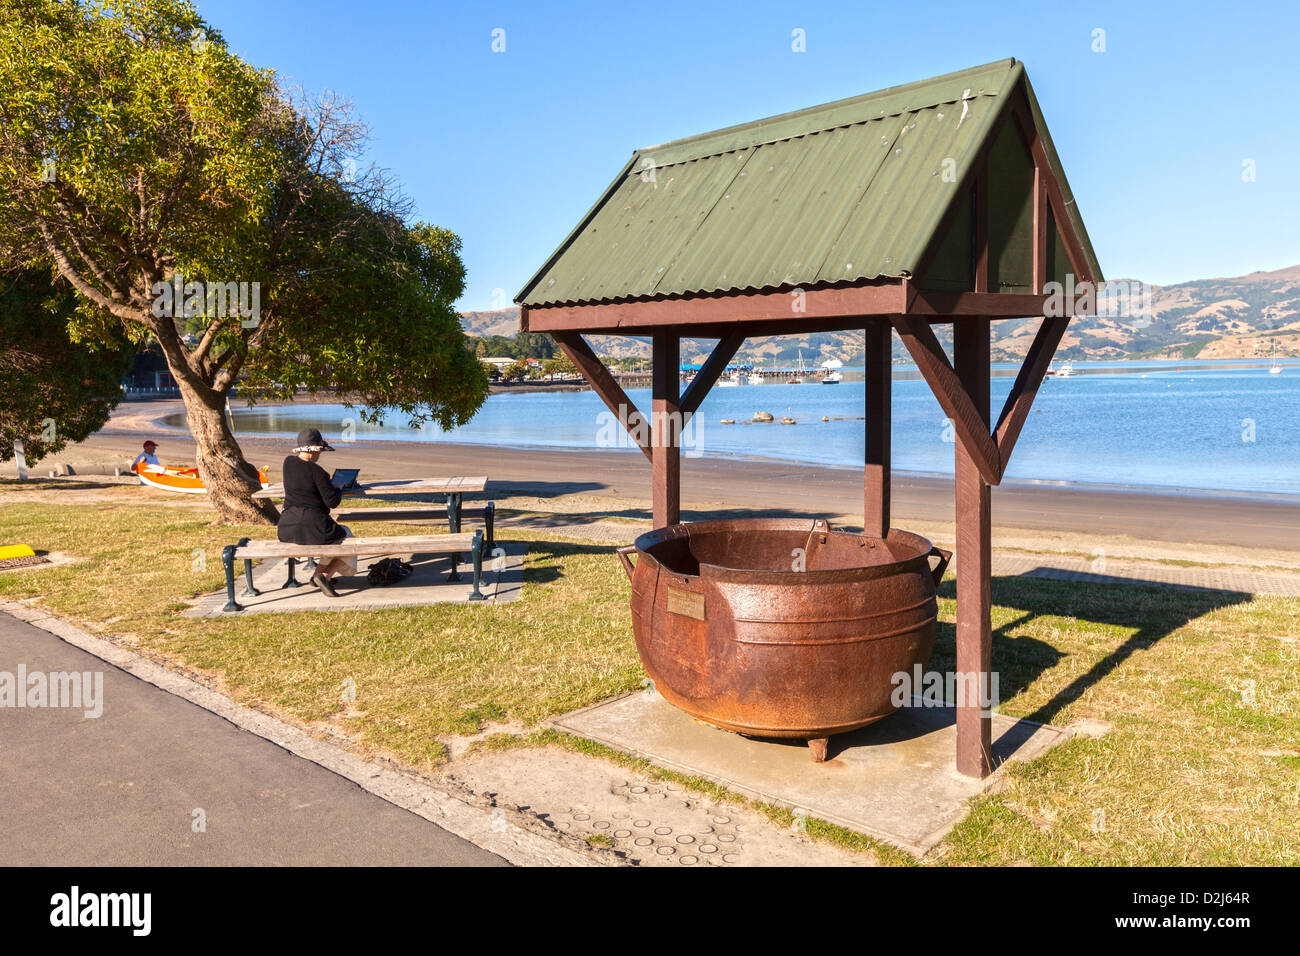 Pruebe un pote, reliquia de Akaroa los días como una estación ballenera, en el muelle del puerto. Mujer sentada sobre un banco de trabajo USIG iPad. Foto de stock